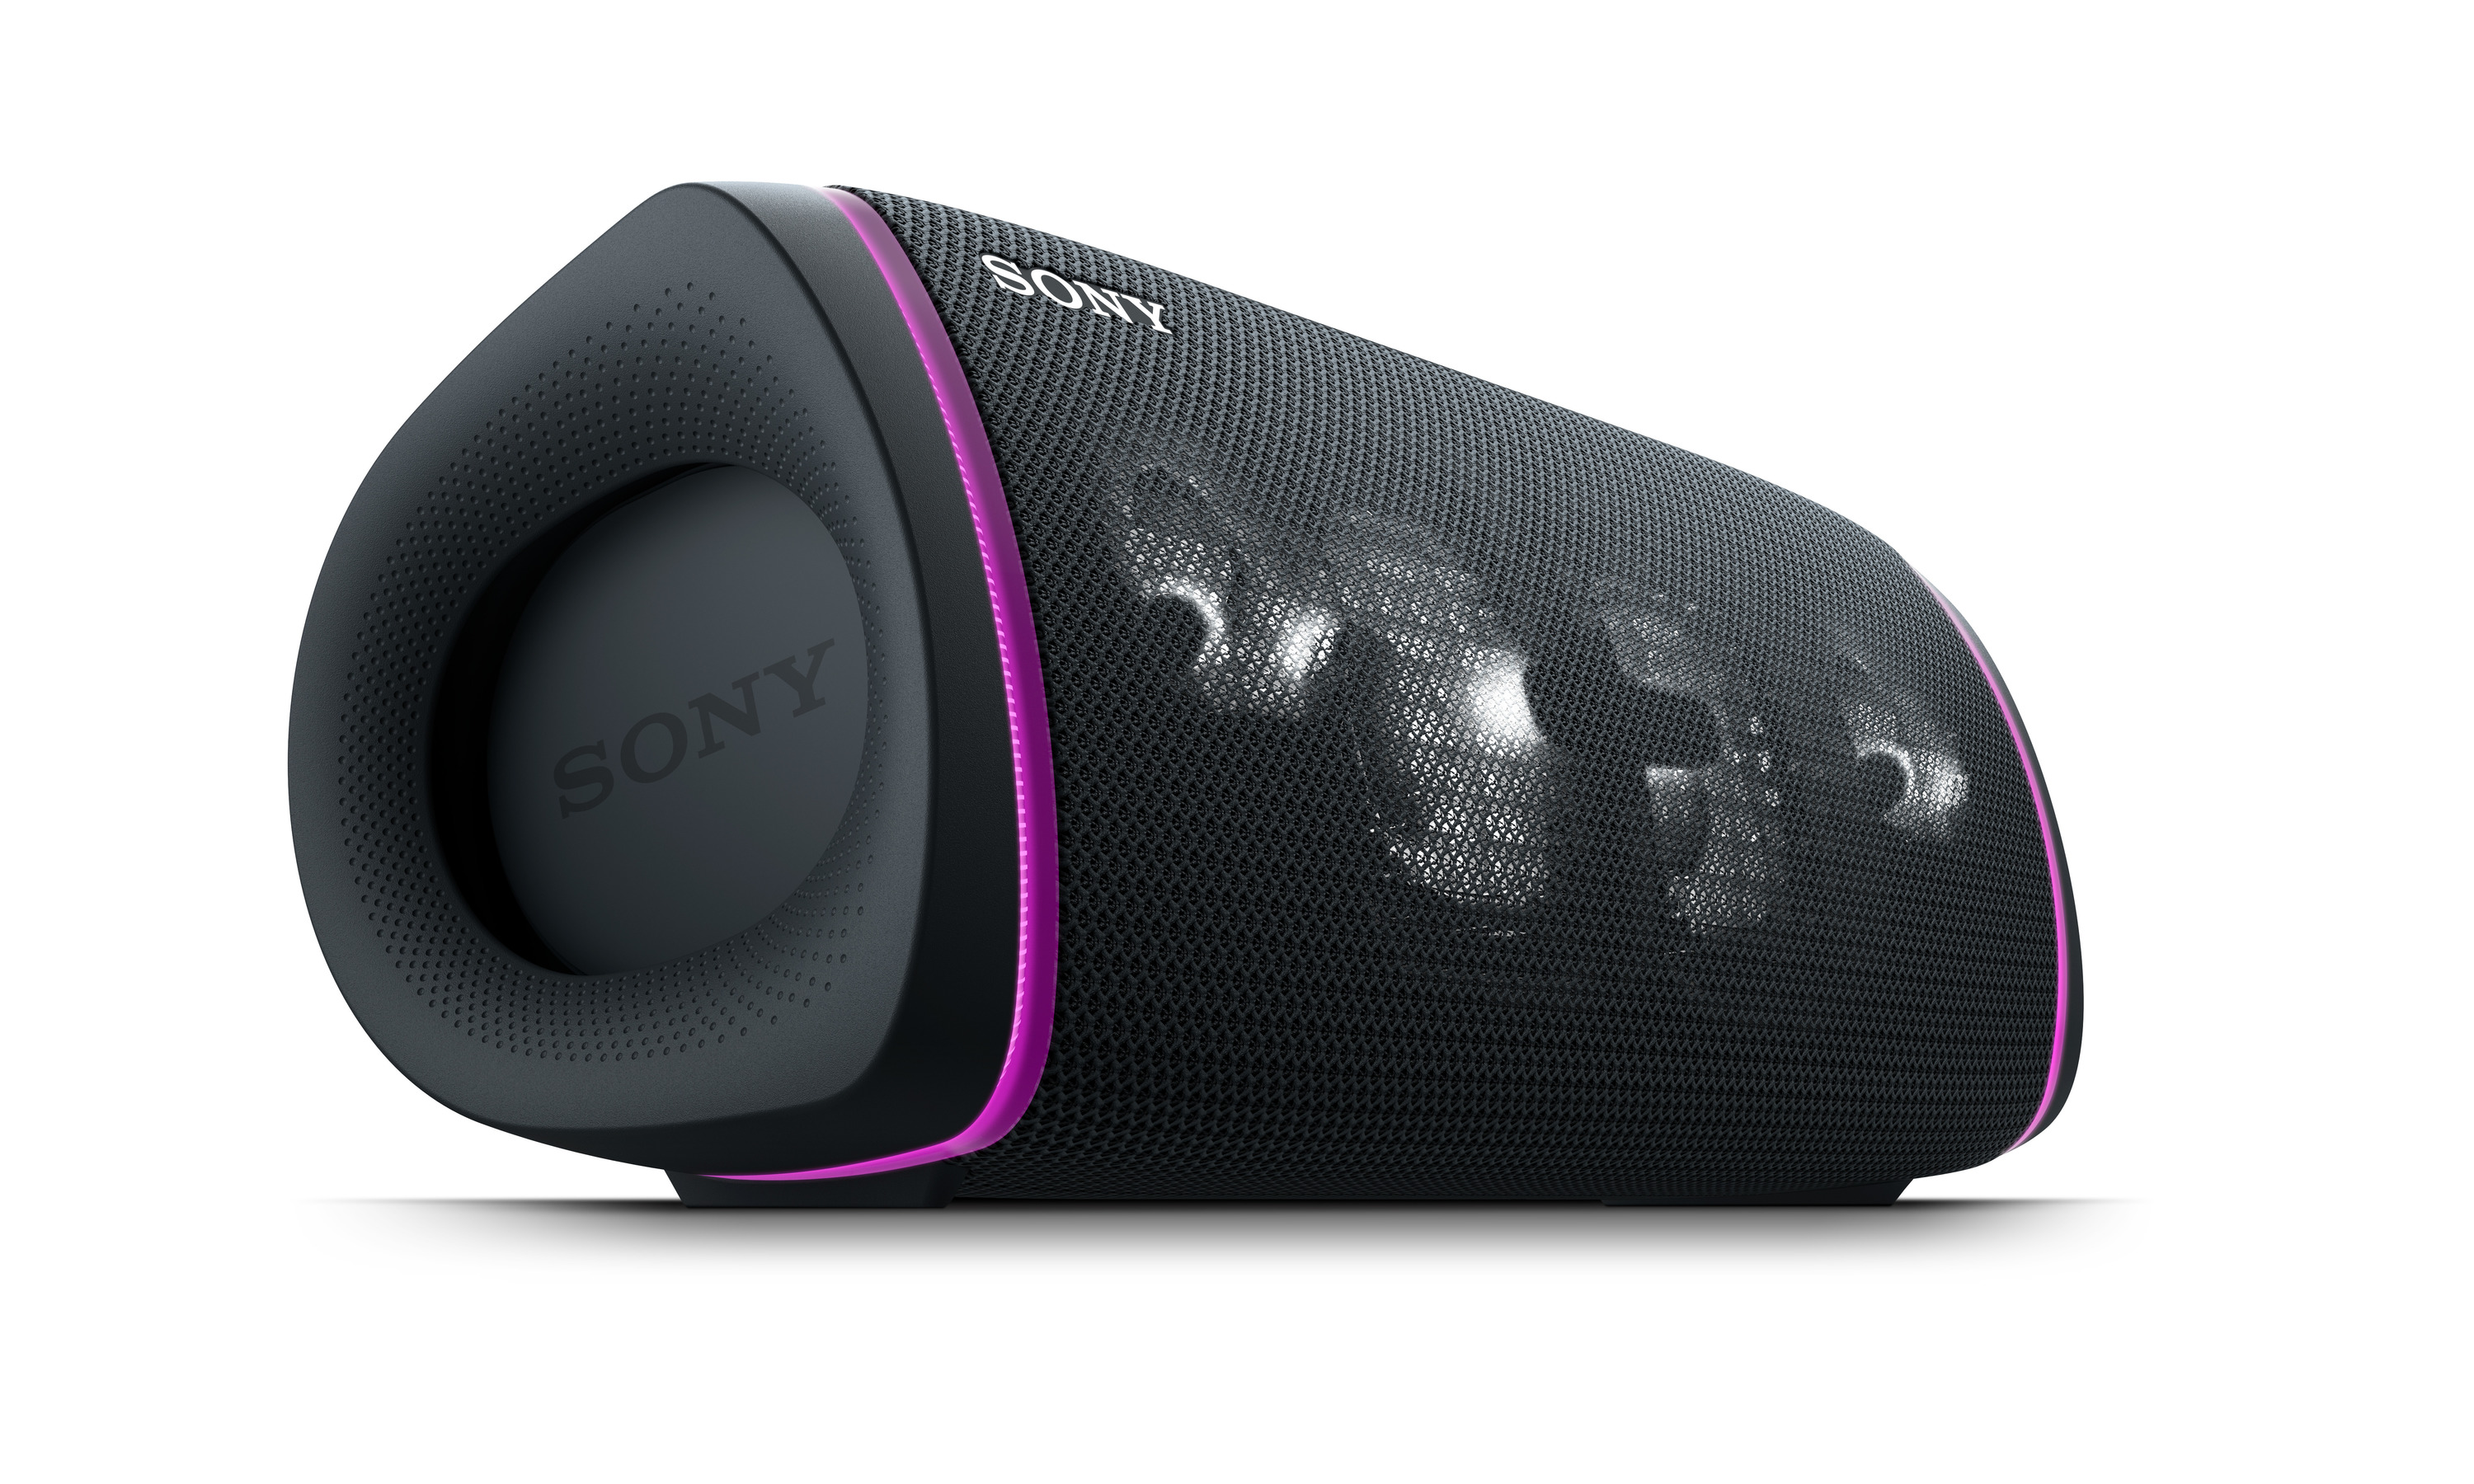 Sony portable speaker